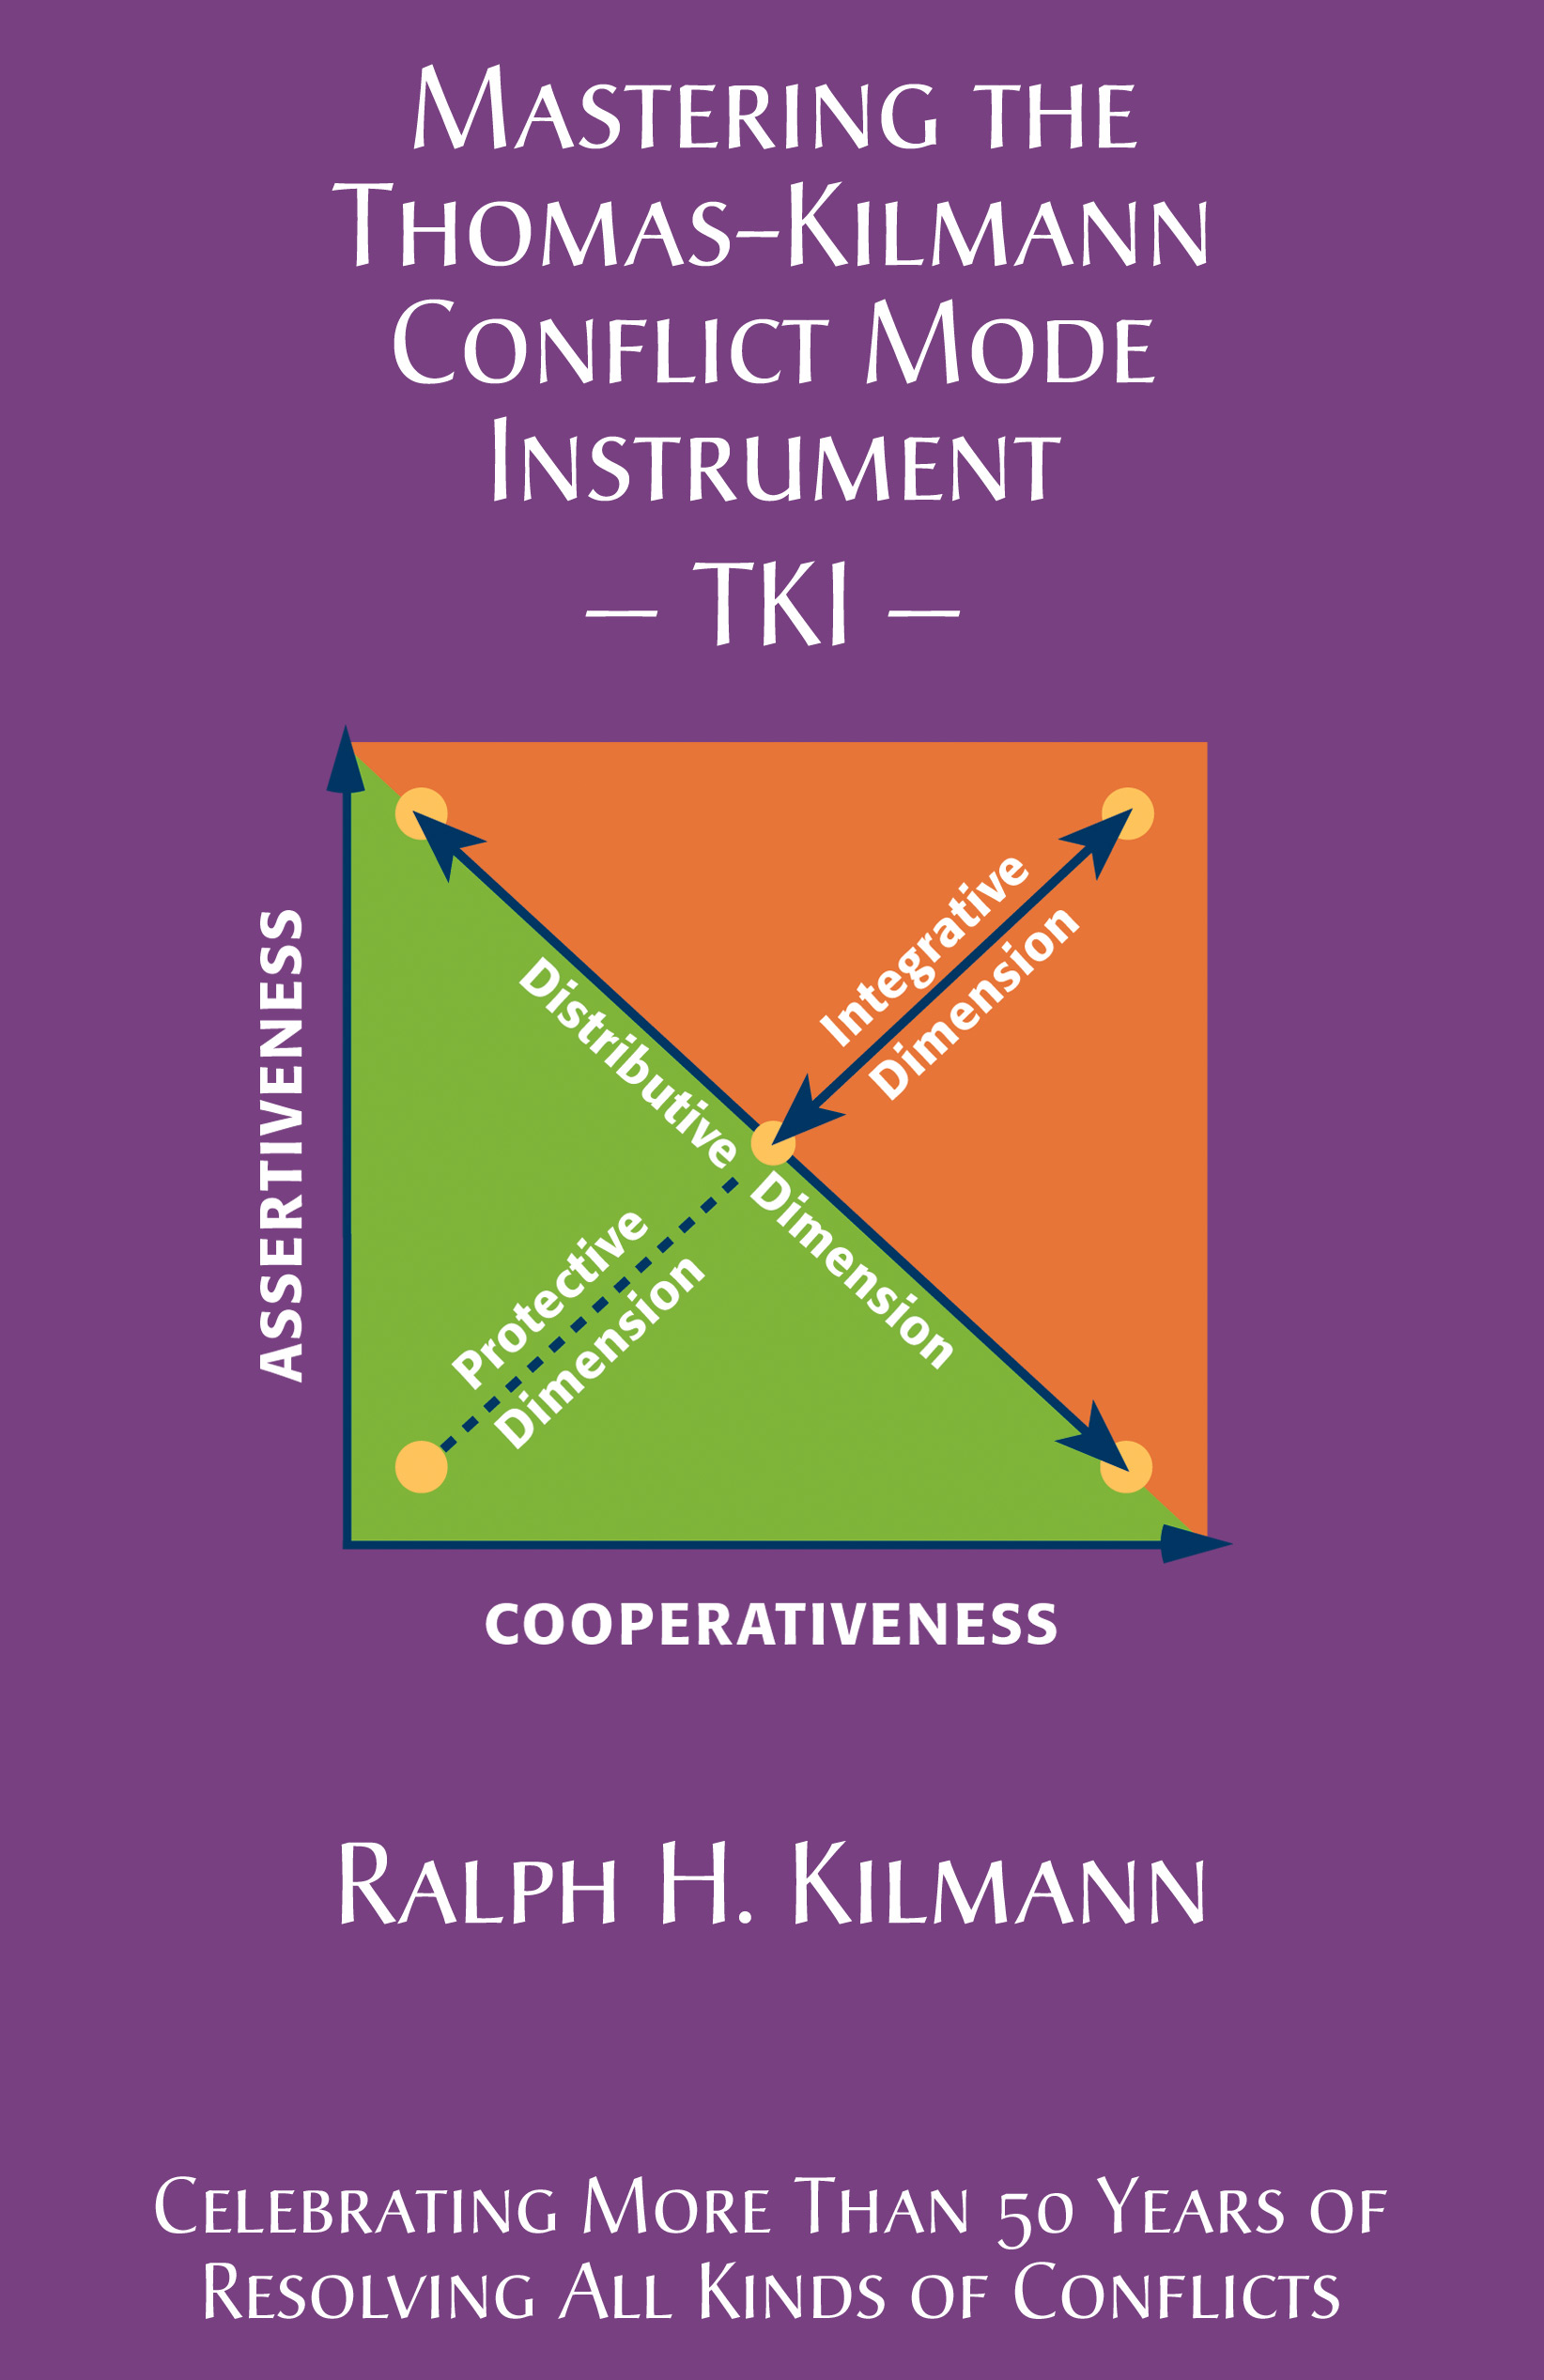 The TKI Book